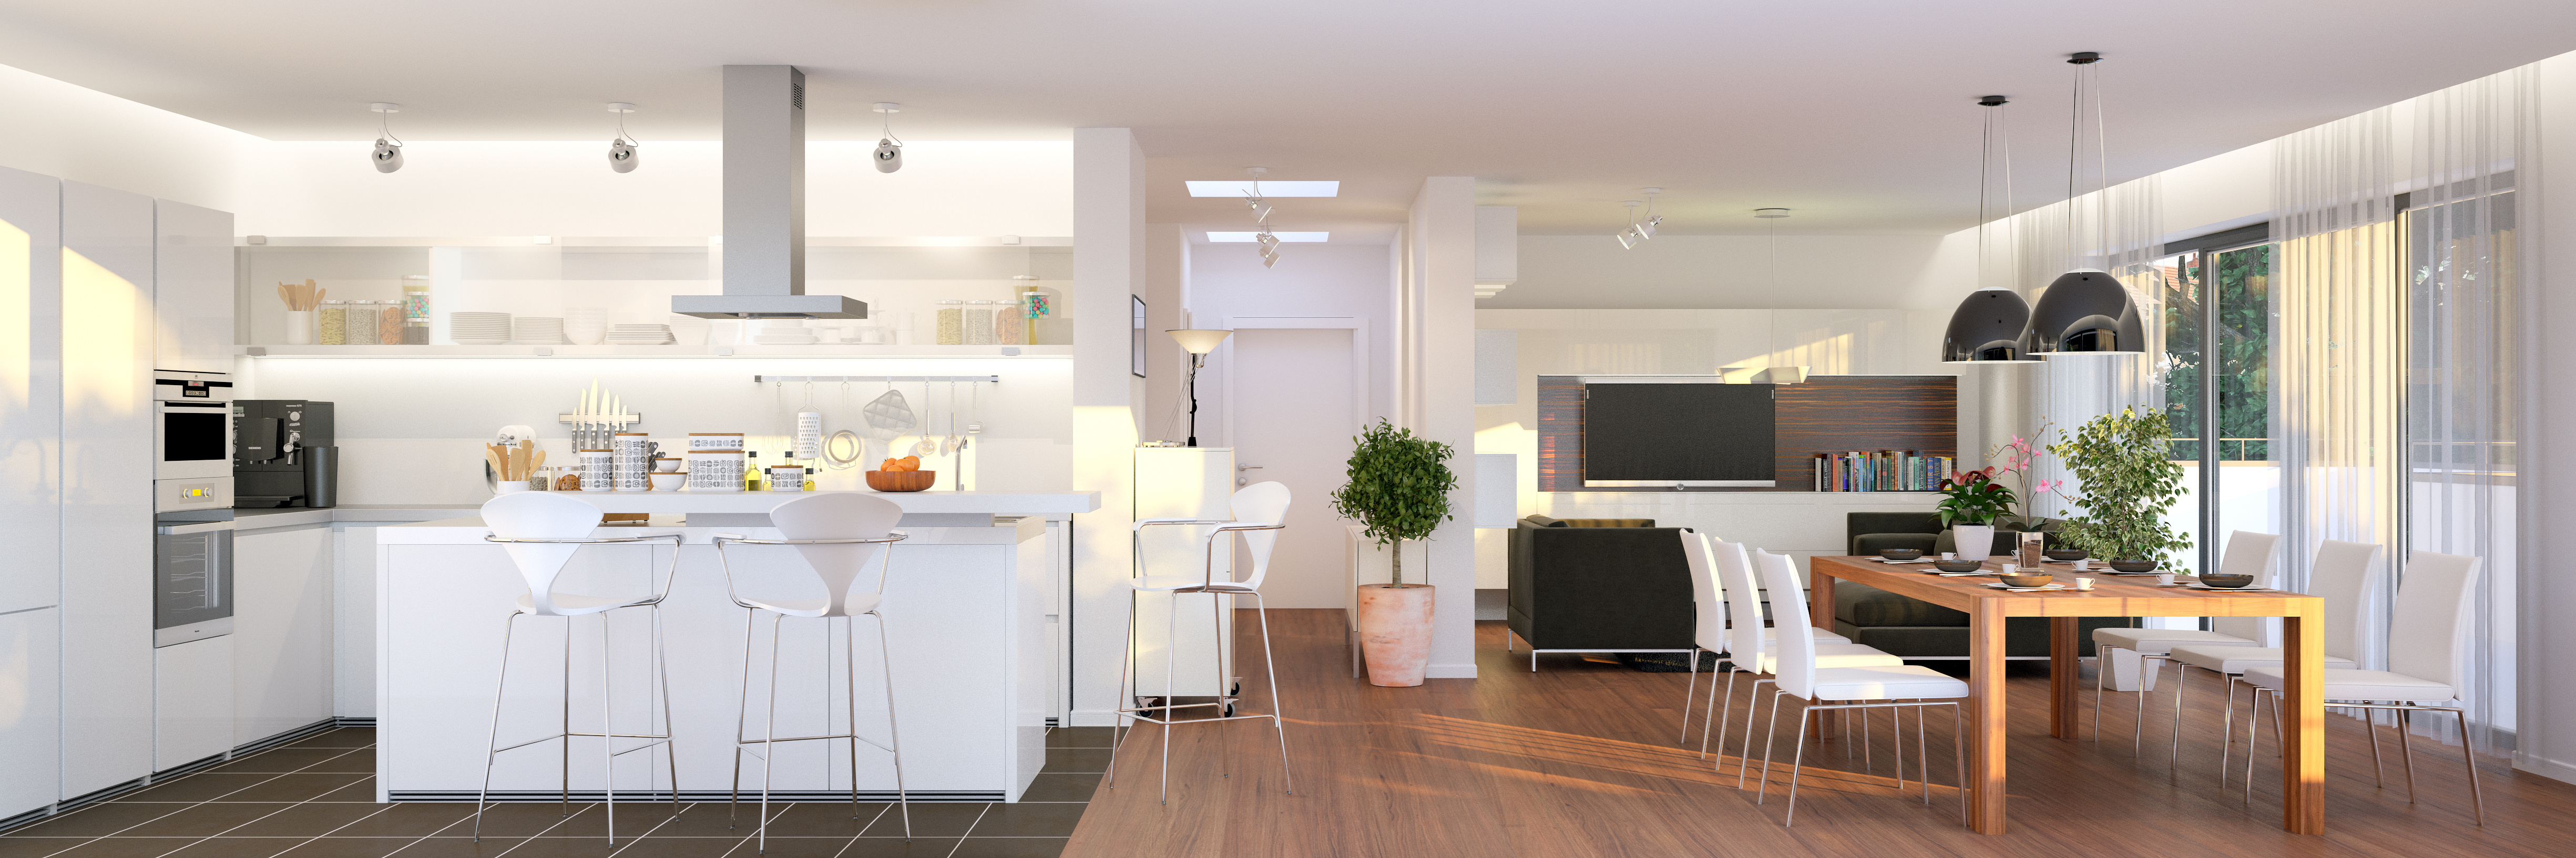 Offene Küche und Wohnzimmerbereich
					©AdobeStock_89910337_Christian Hillebrand
				